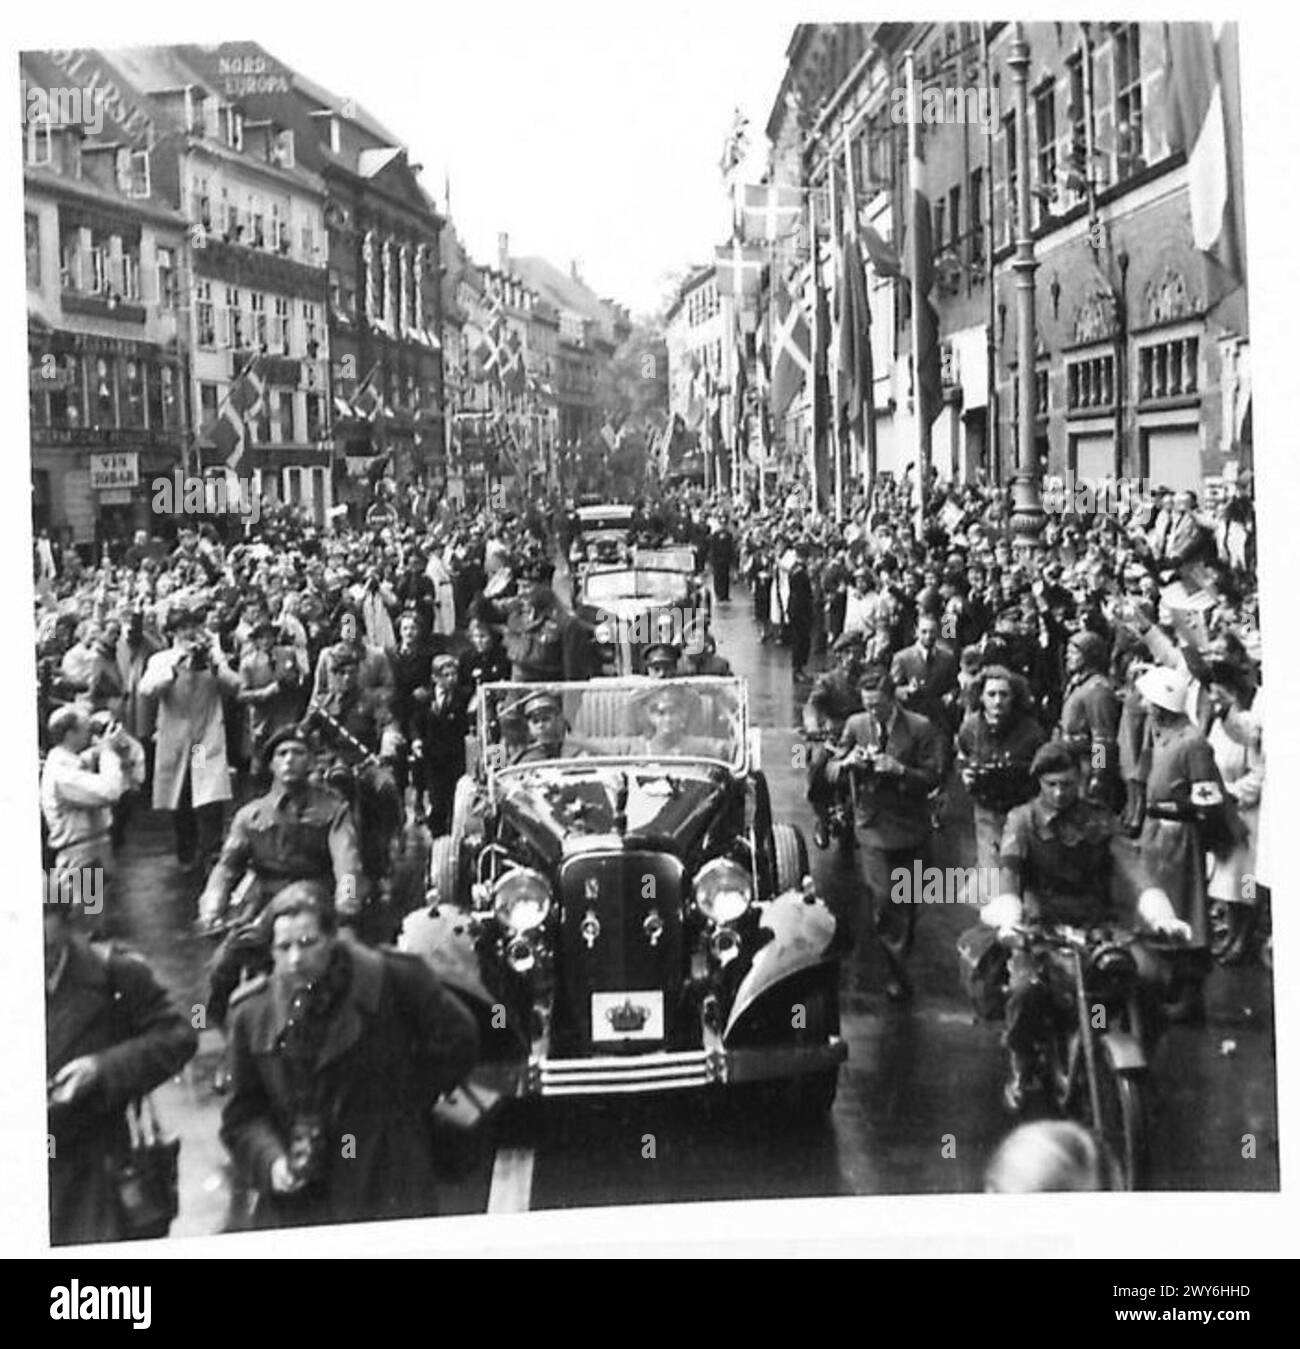 KOPENHAGEN - Feldmarschall Montgomery fährt durch die Straßen der Stadt. Britische Armee, 21. Armeegruppe Stockfoto